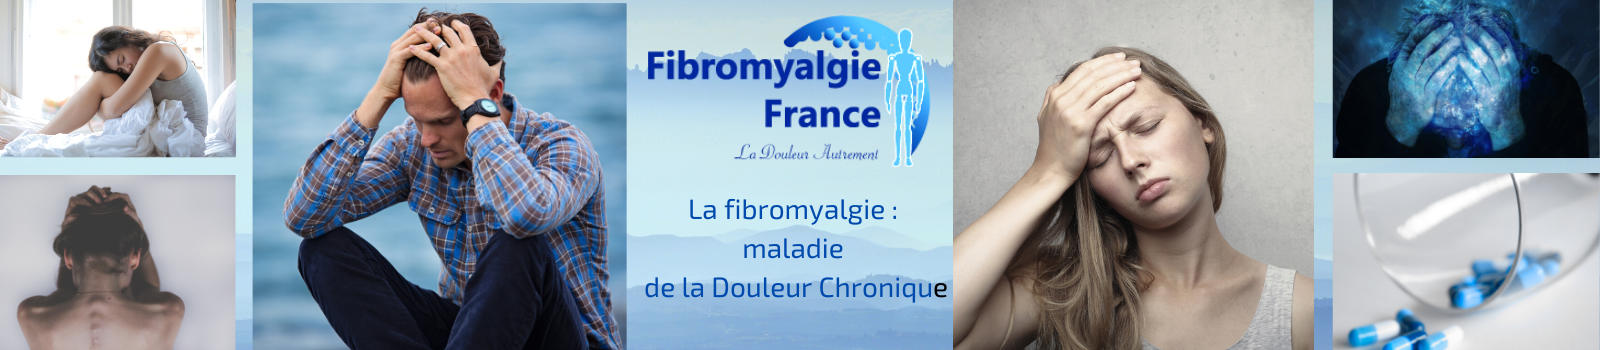 Image la fibromyalgie